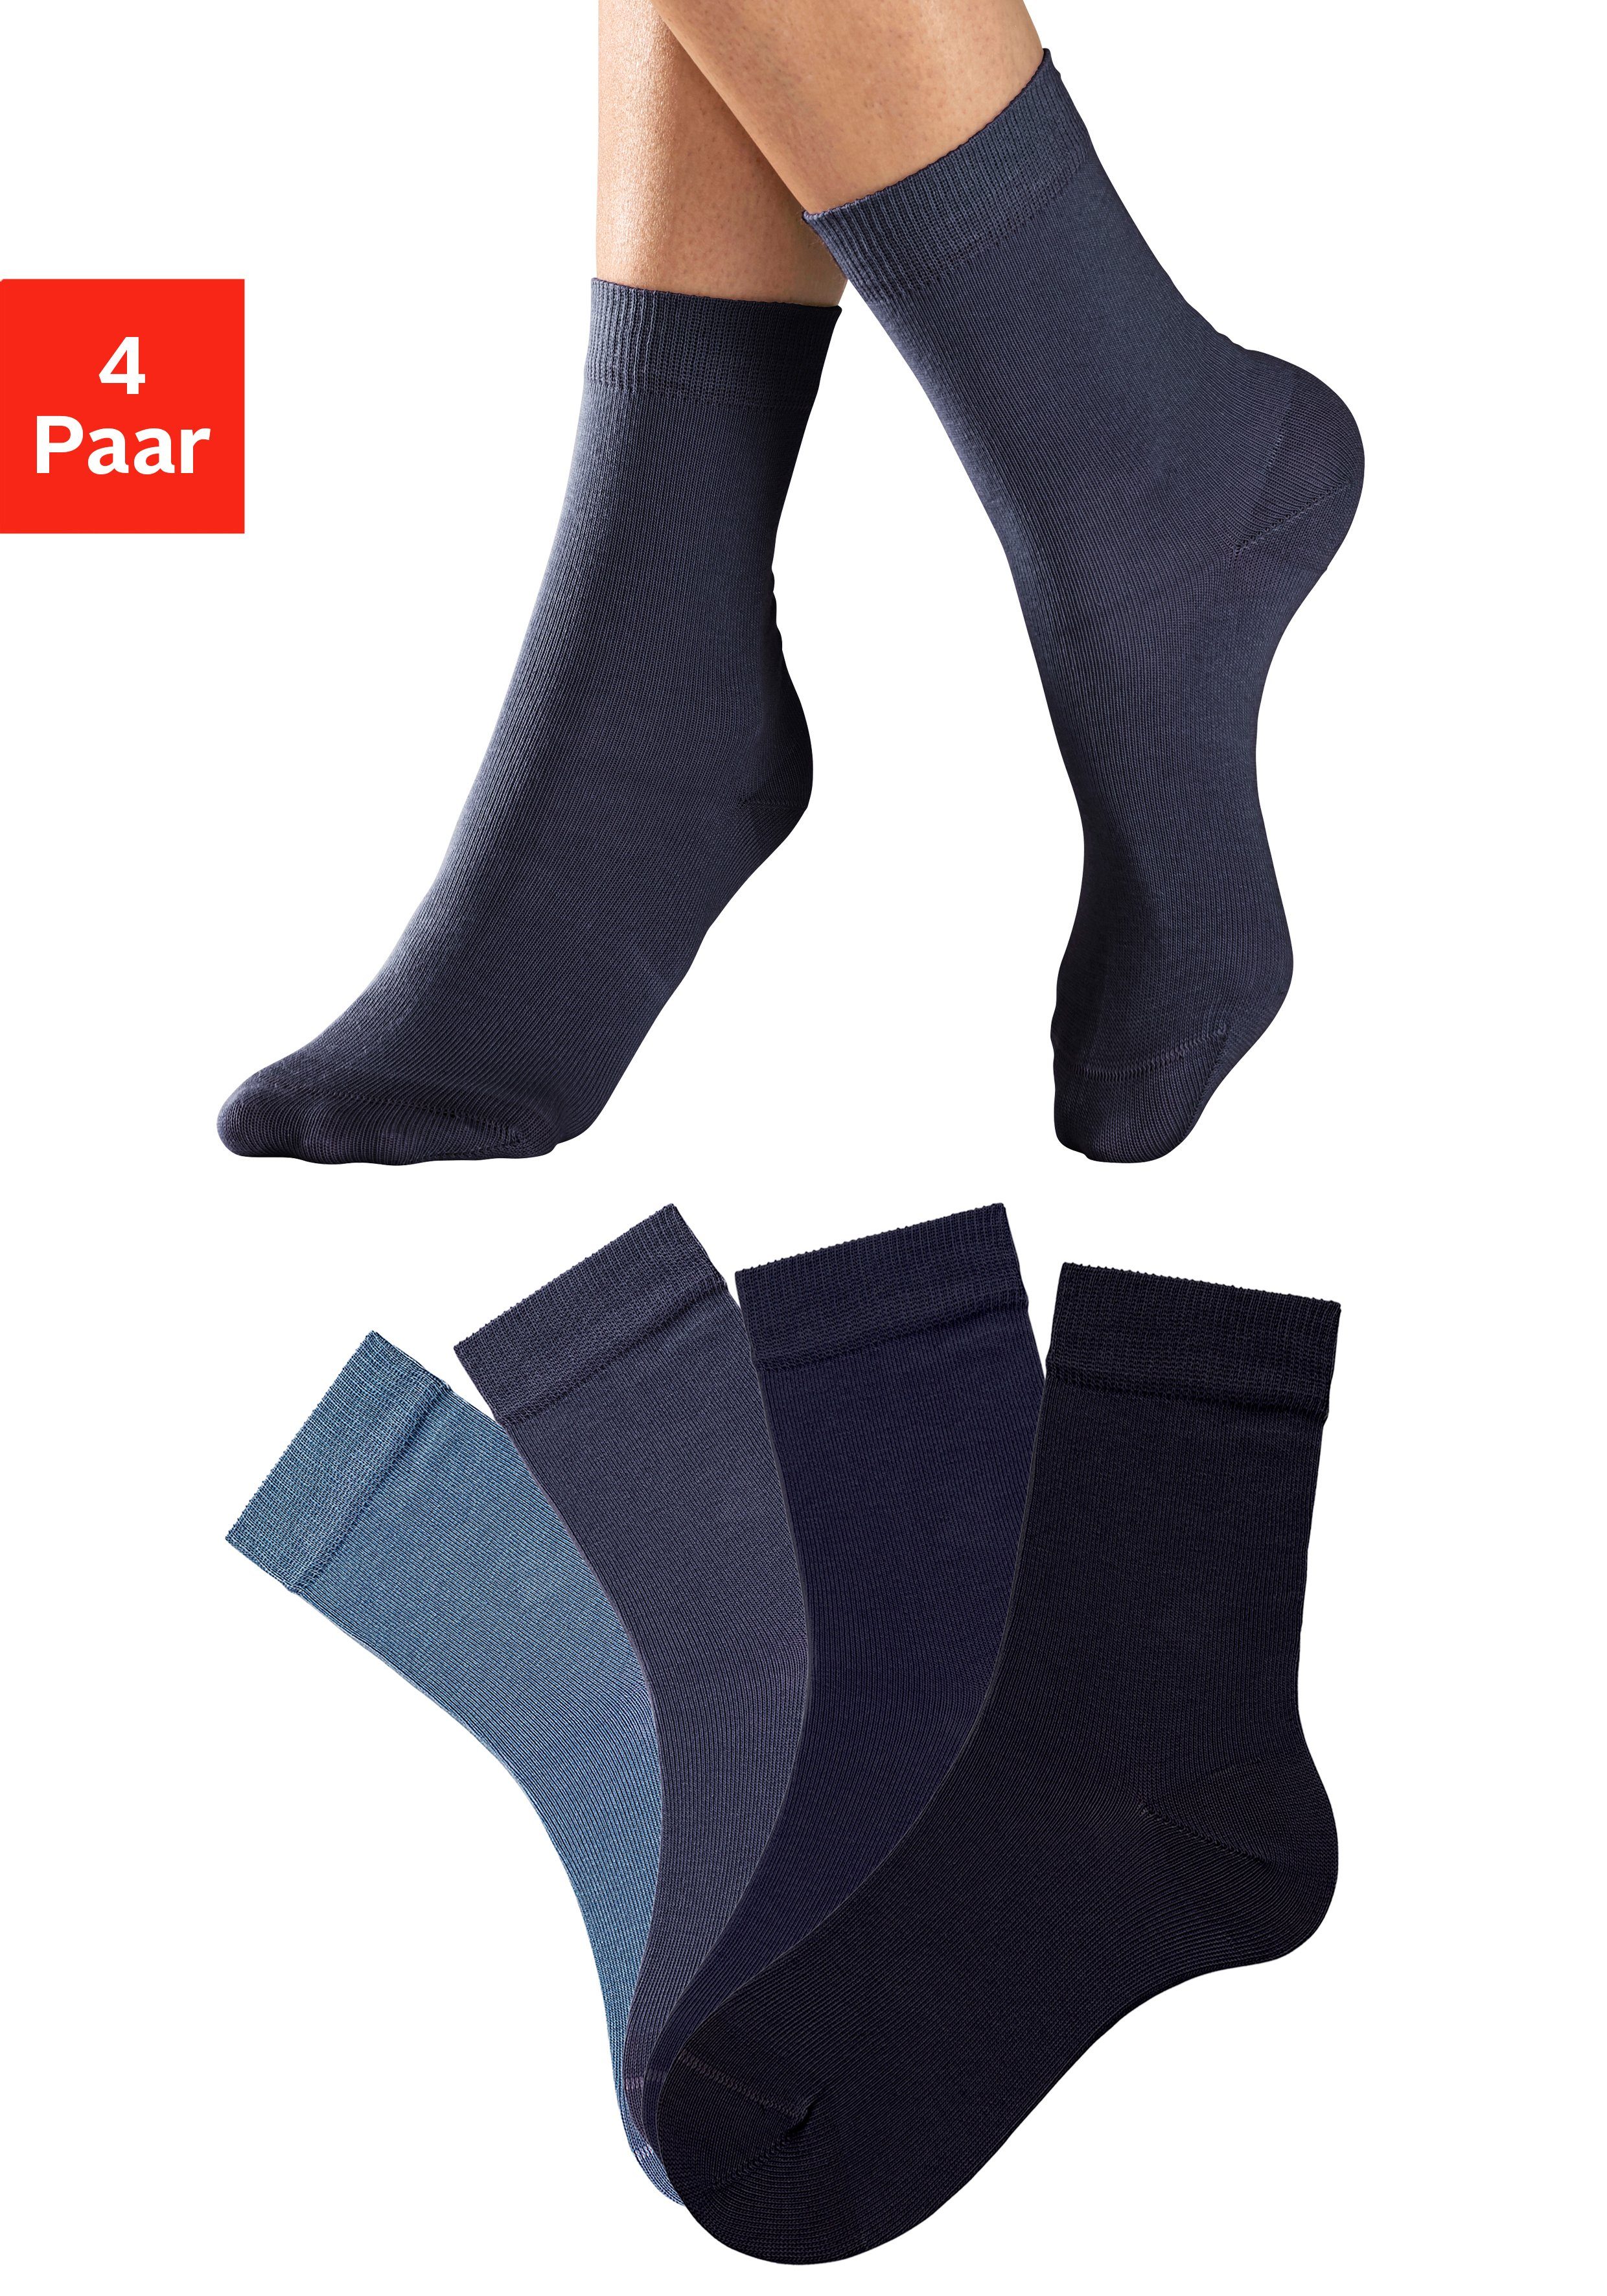 H.I.S Socken (Set, 4-Paar) in Farbzusammenstellungen unterschiedlichen jeans-blau